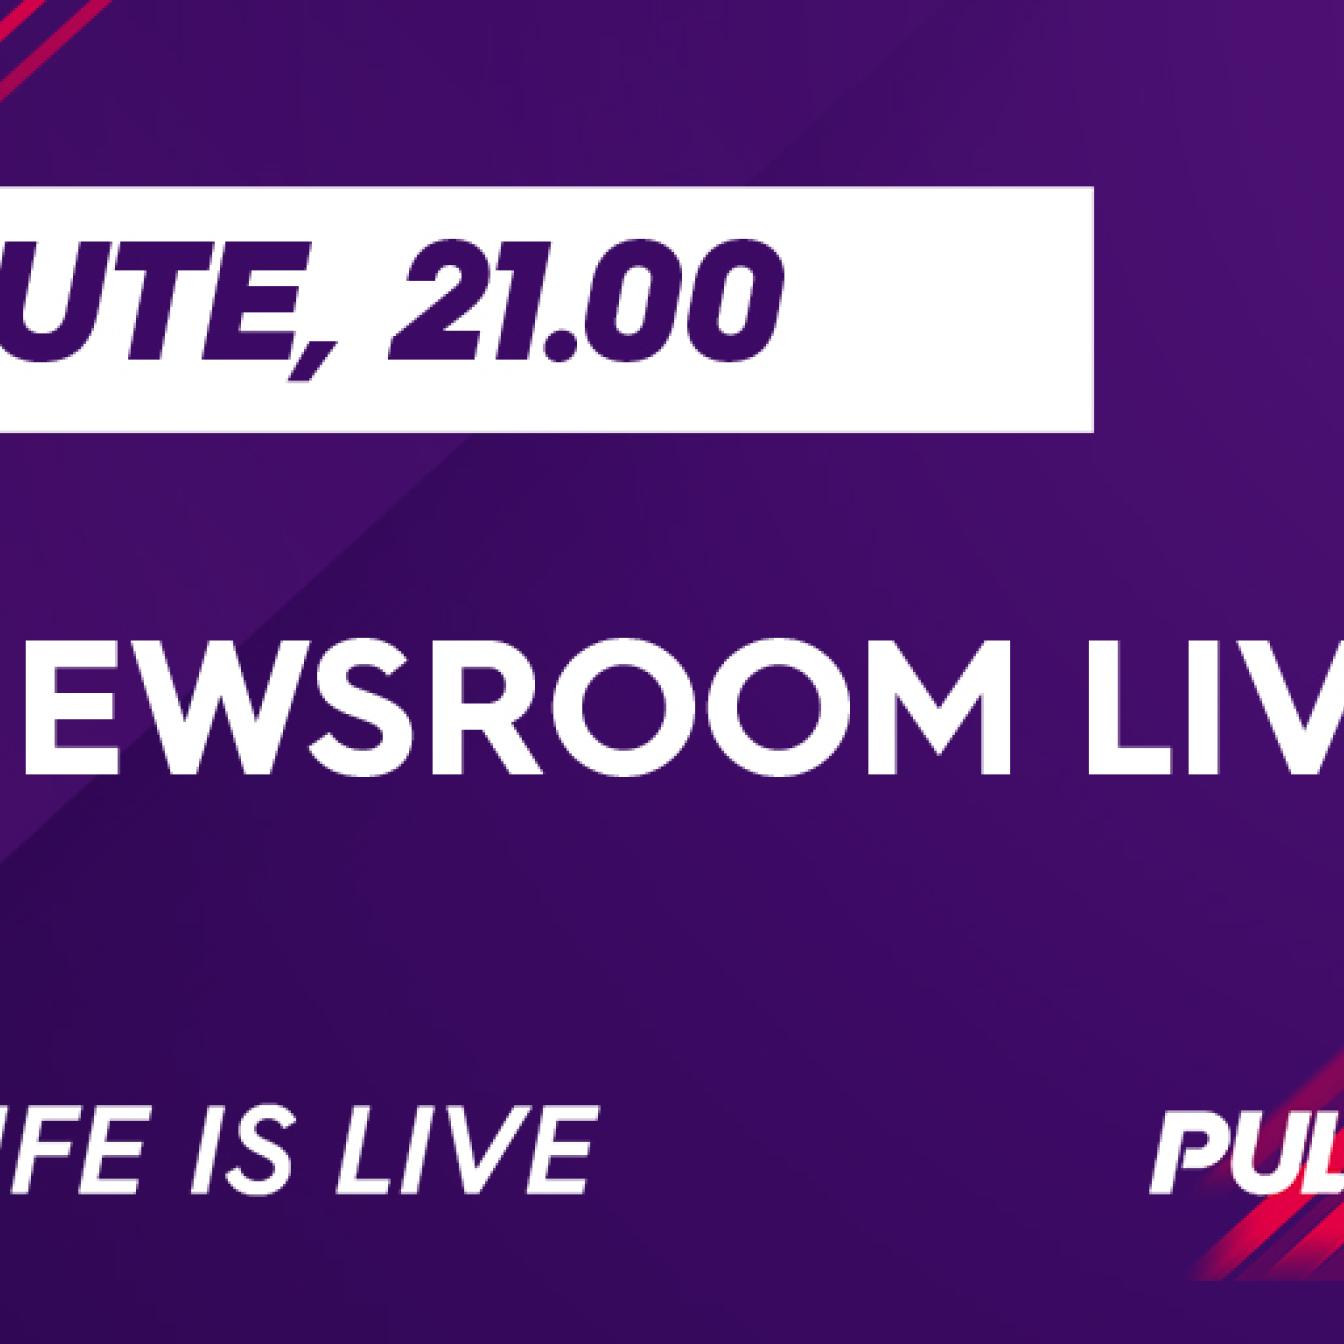 Newsroom LIVE